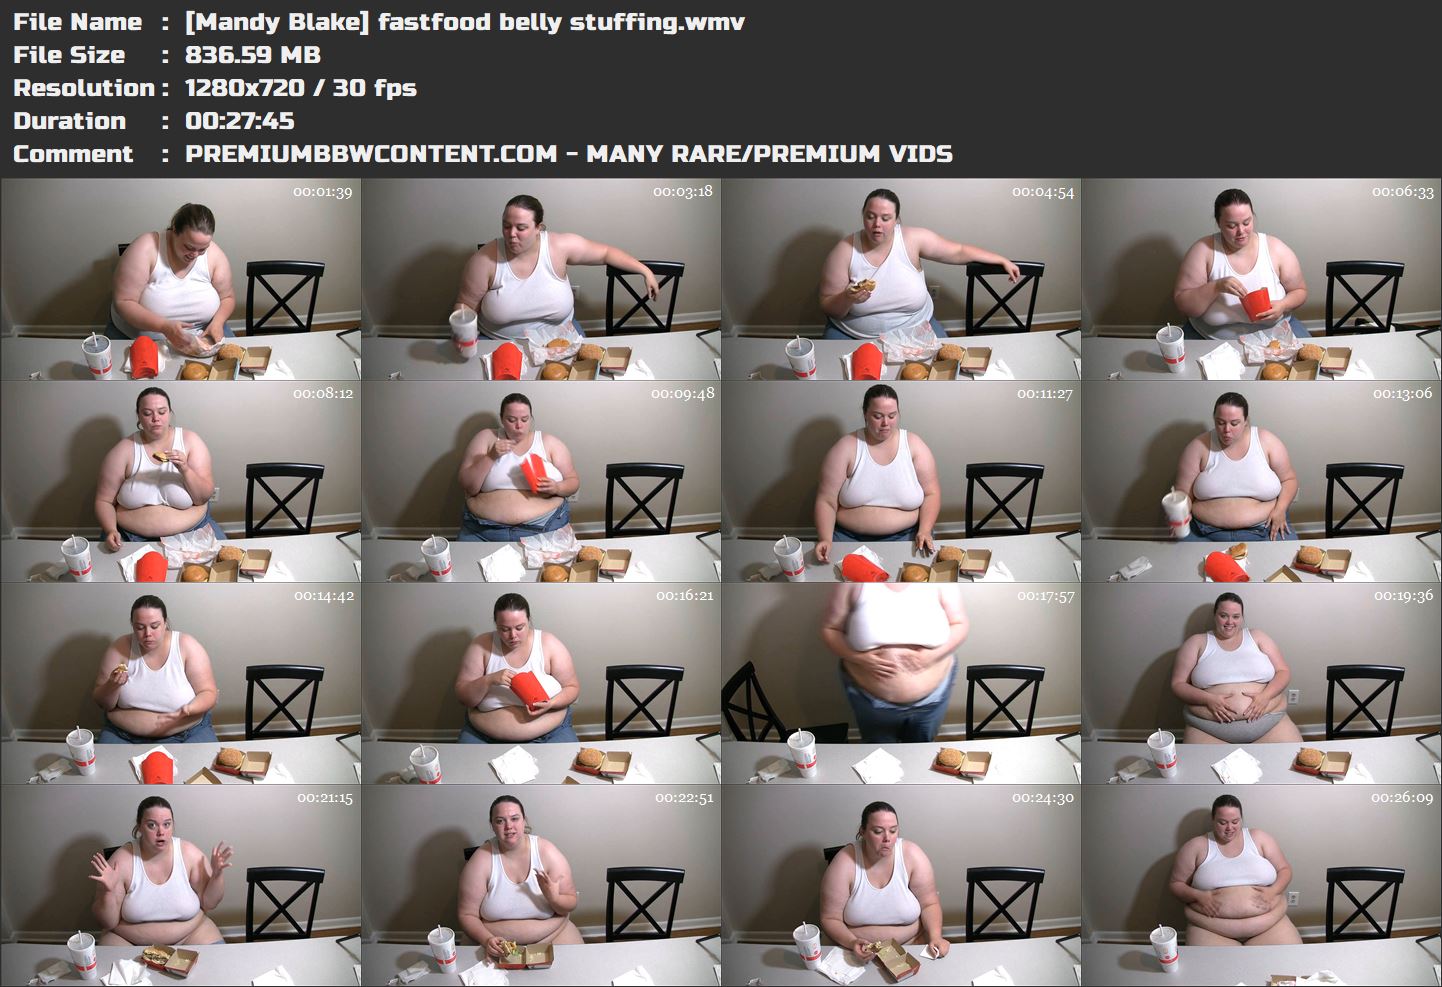 [Mandy Blake] fastfood belly stuffing thumbnails